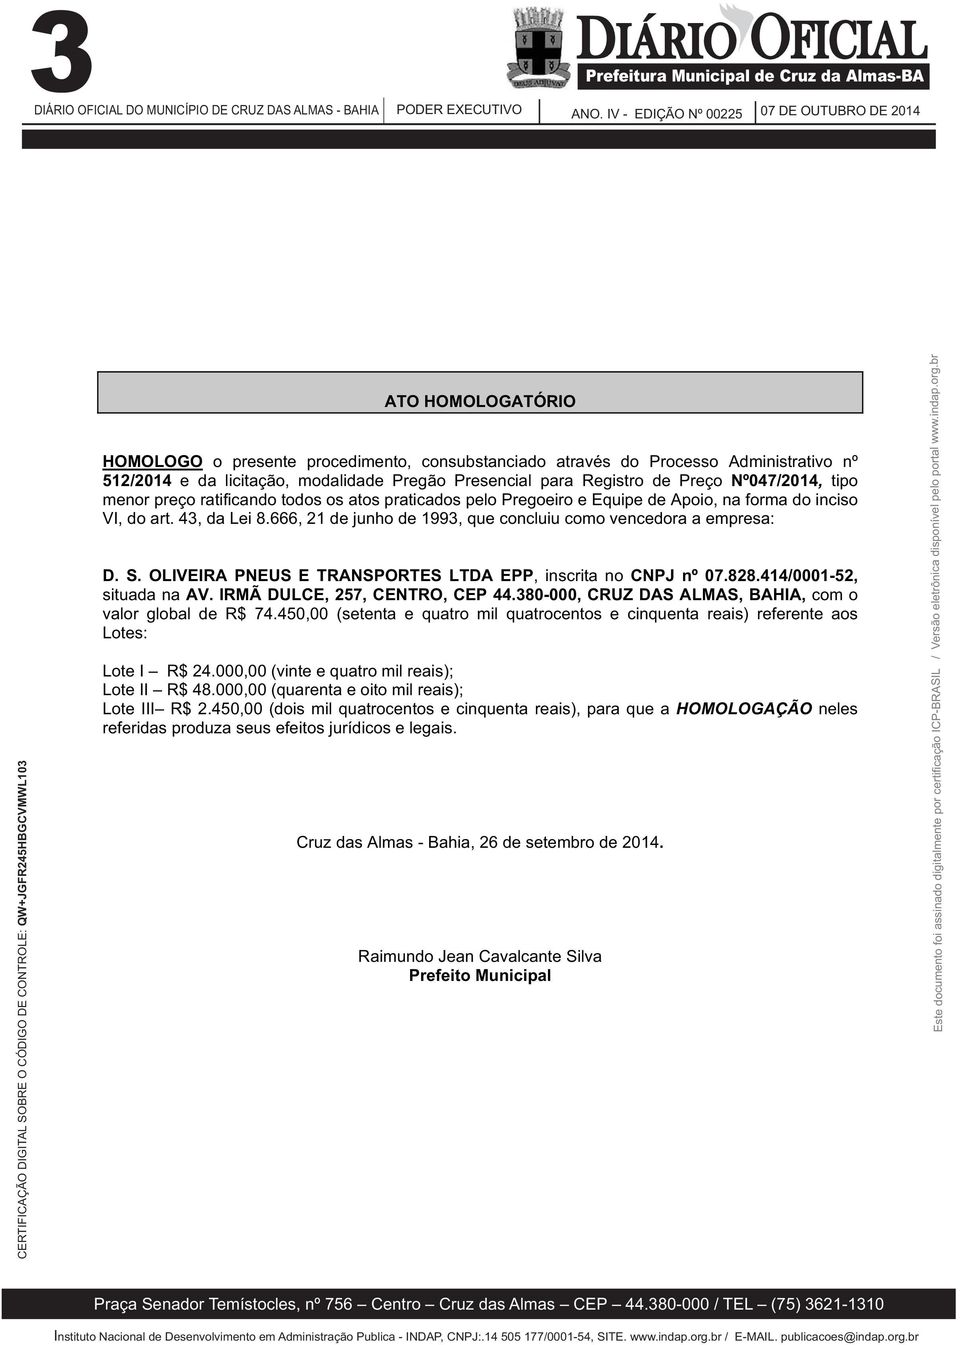 666, 21 de junho de 1993, que concluiu como vencedora a empresa: D. S. OLIVEIRA PNEUS E TRANSPORTES LTDA EPP, inscritanocnpj nº 07.828.414/0001-52, situada na AV. IRMÃ DULCE, 257, CENTRO, CEP 44.